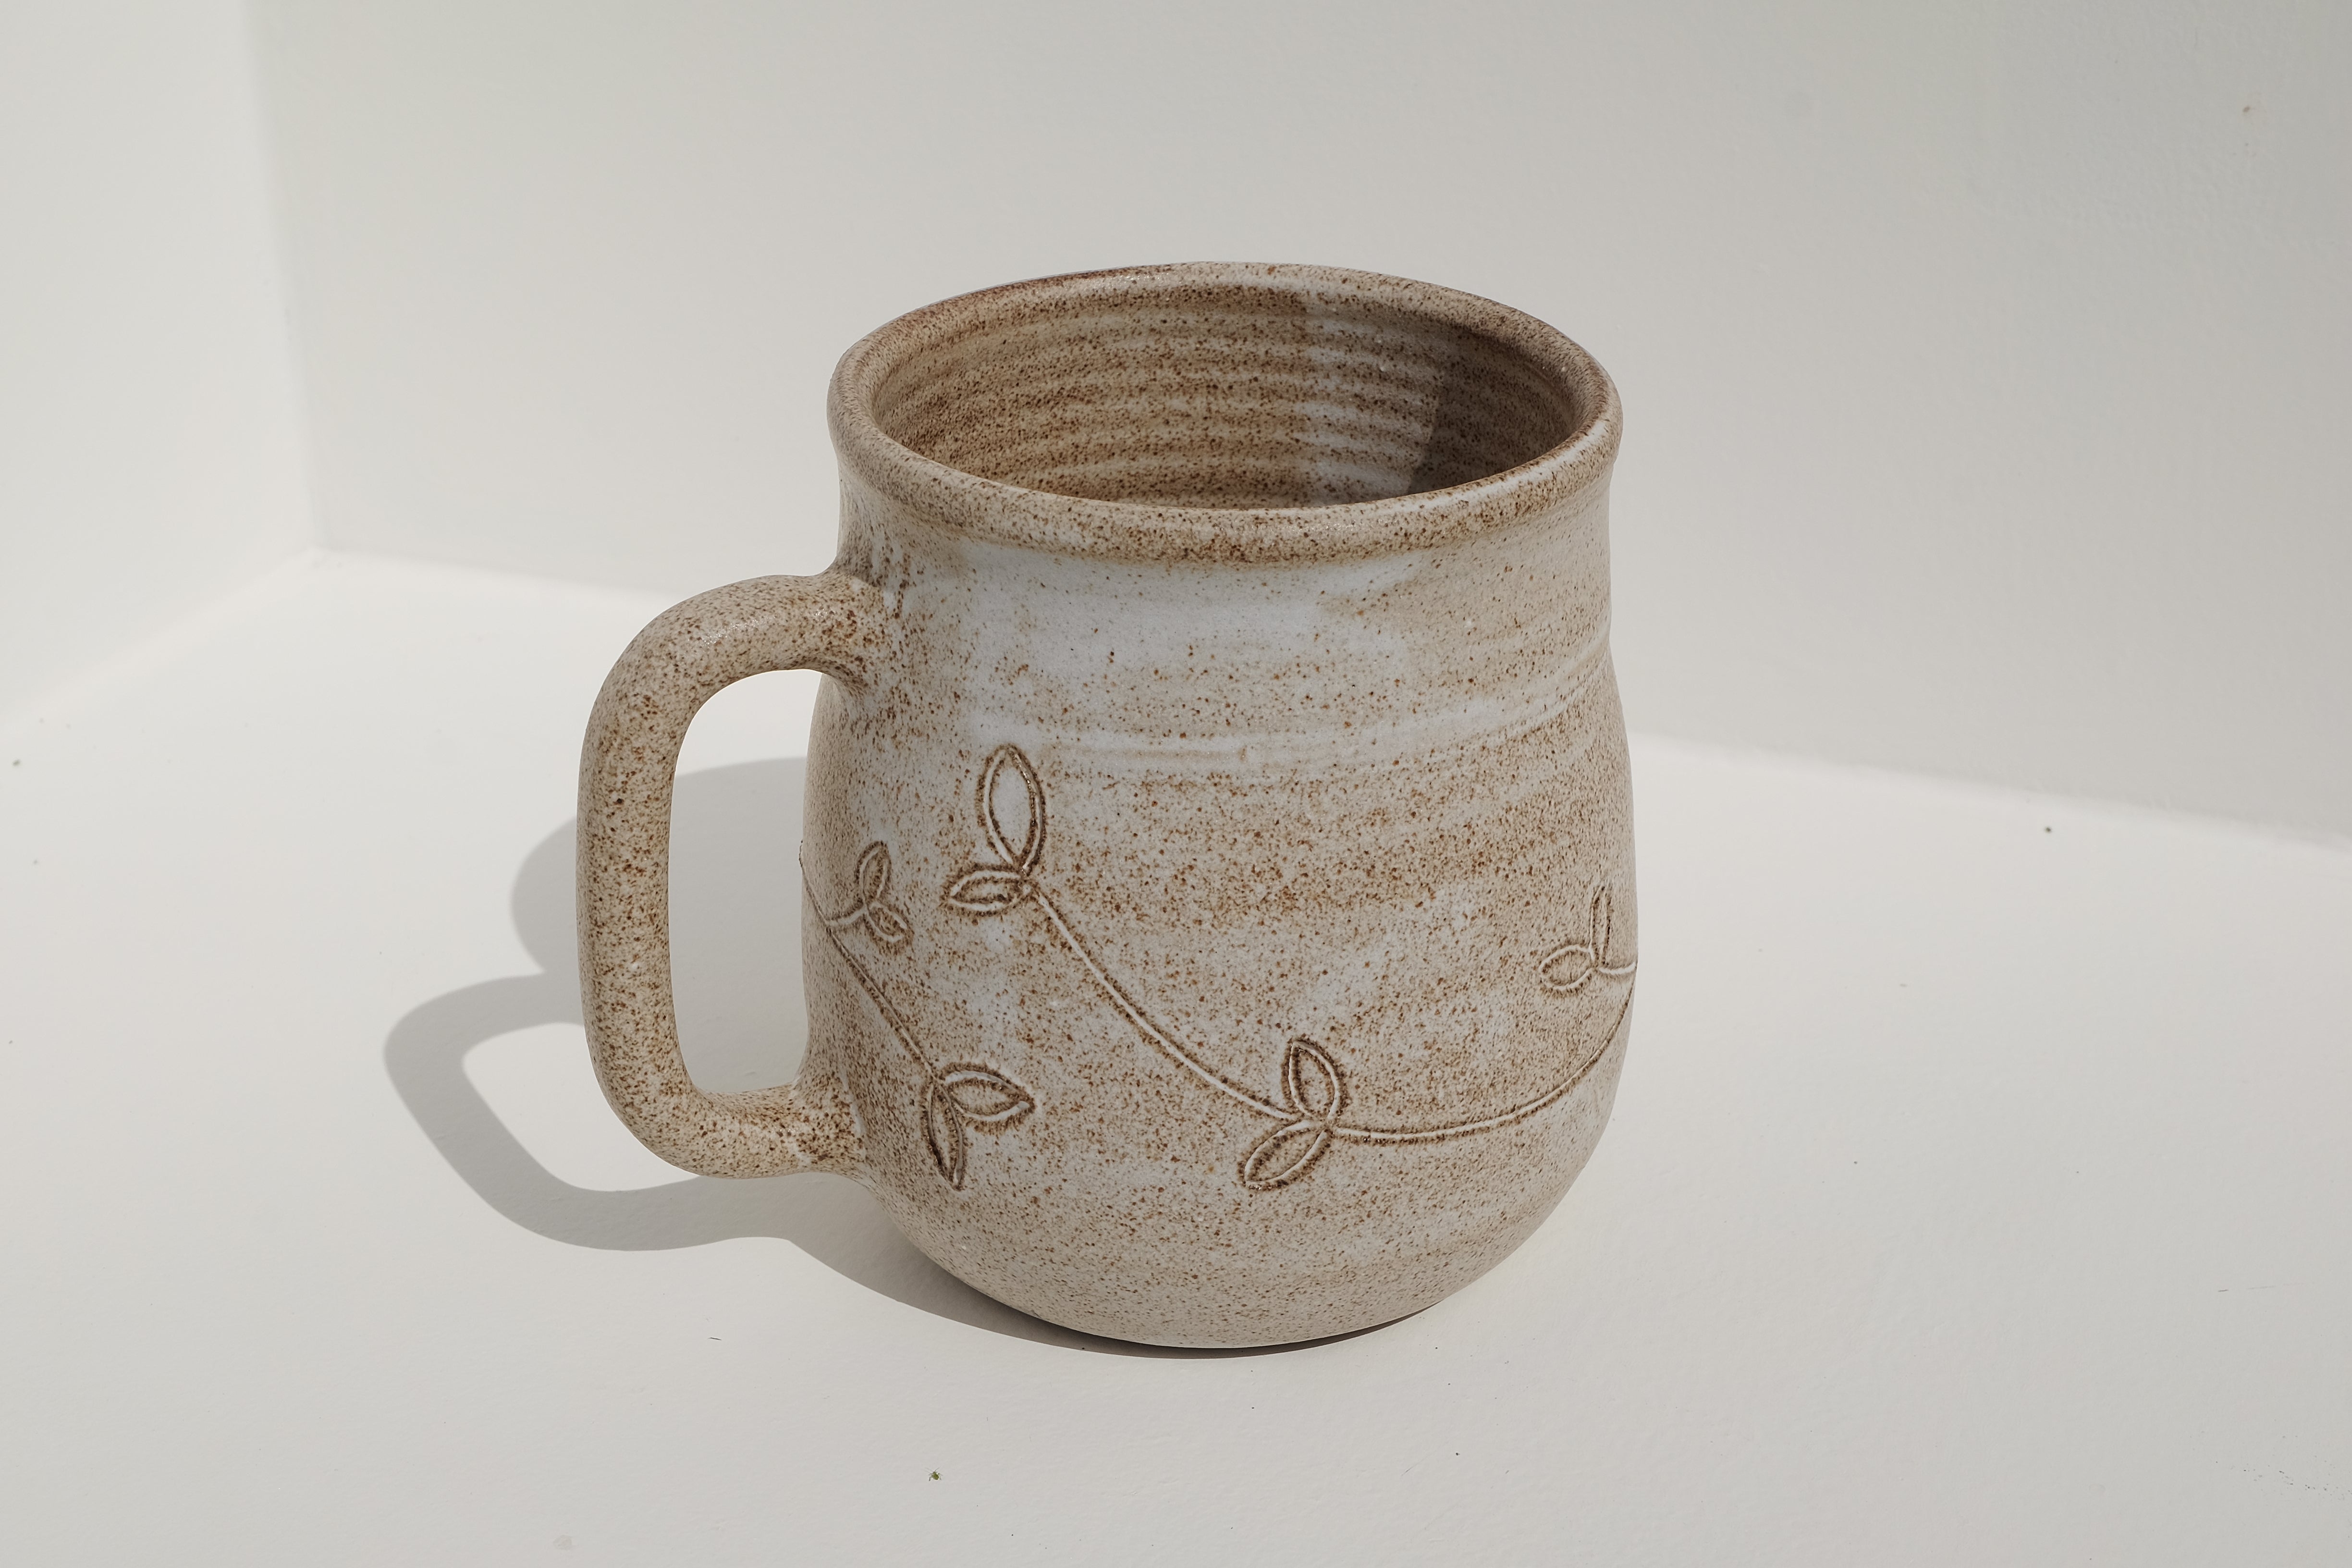 big tea / bear mug with floral details